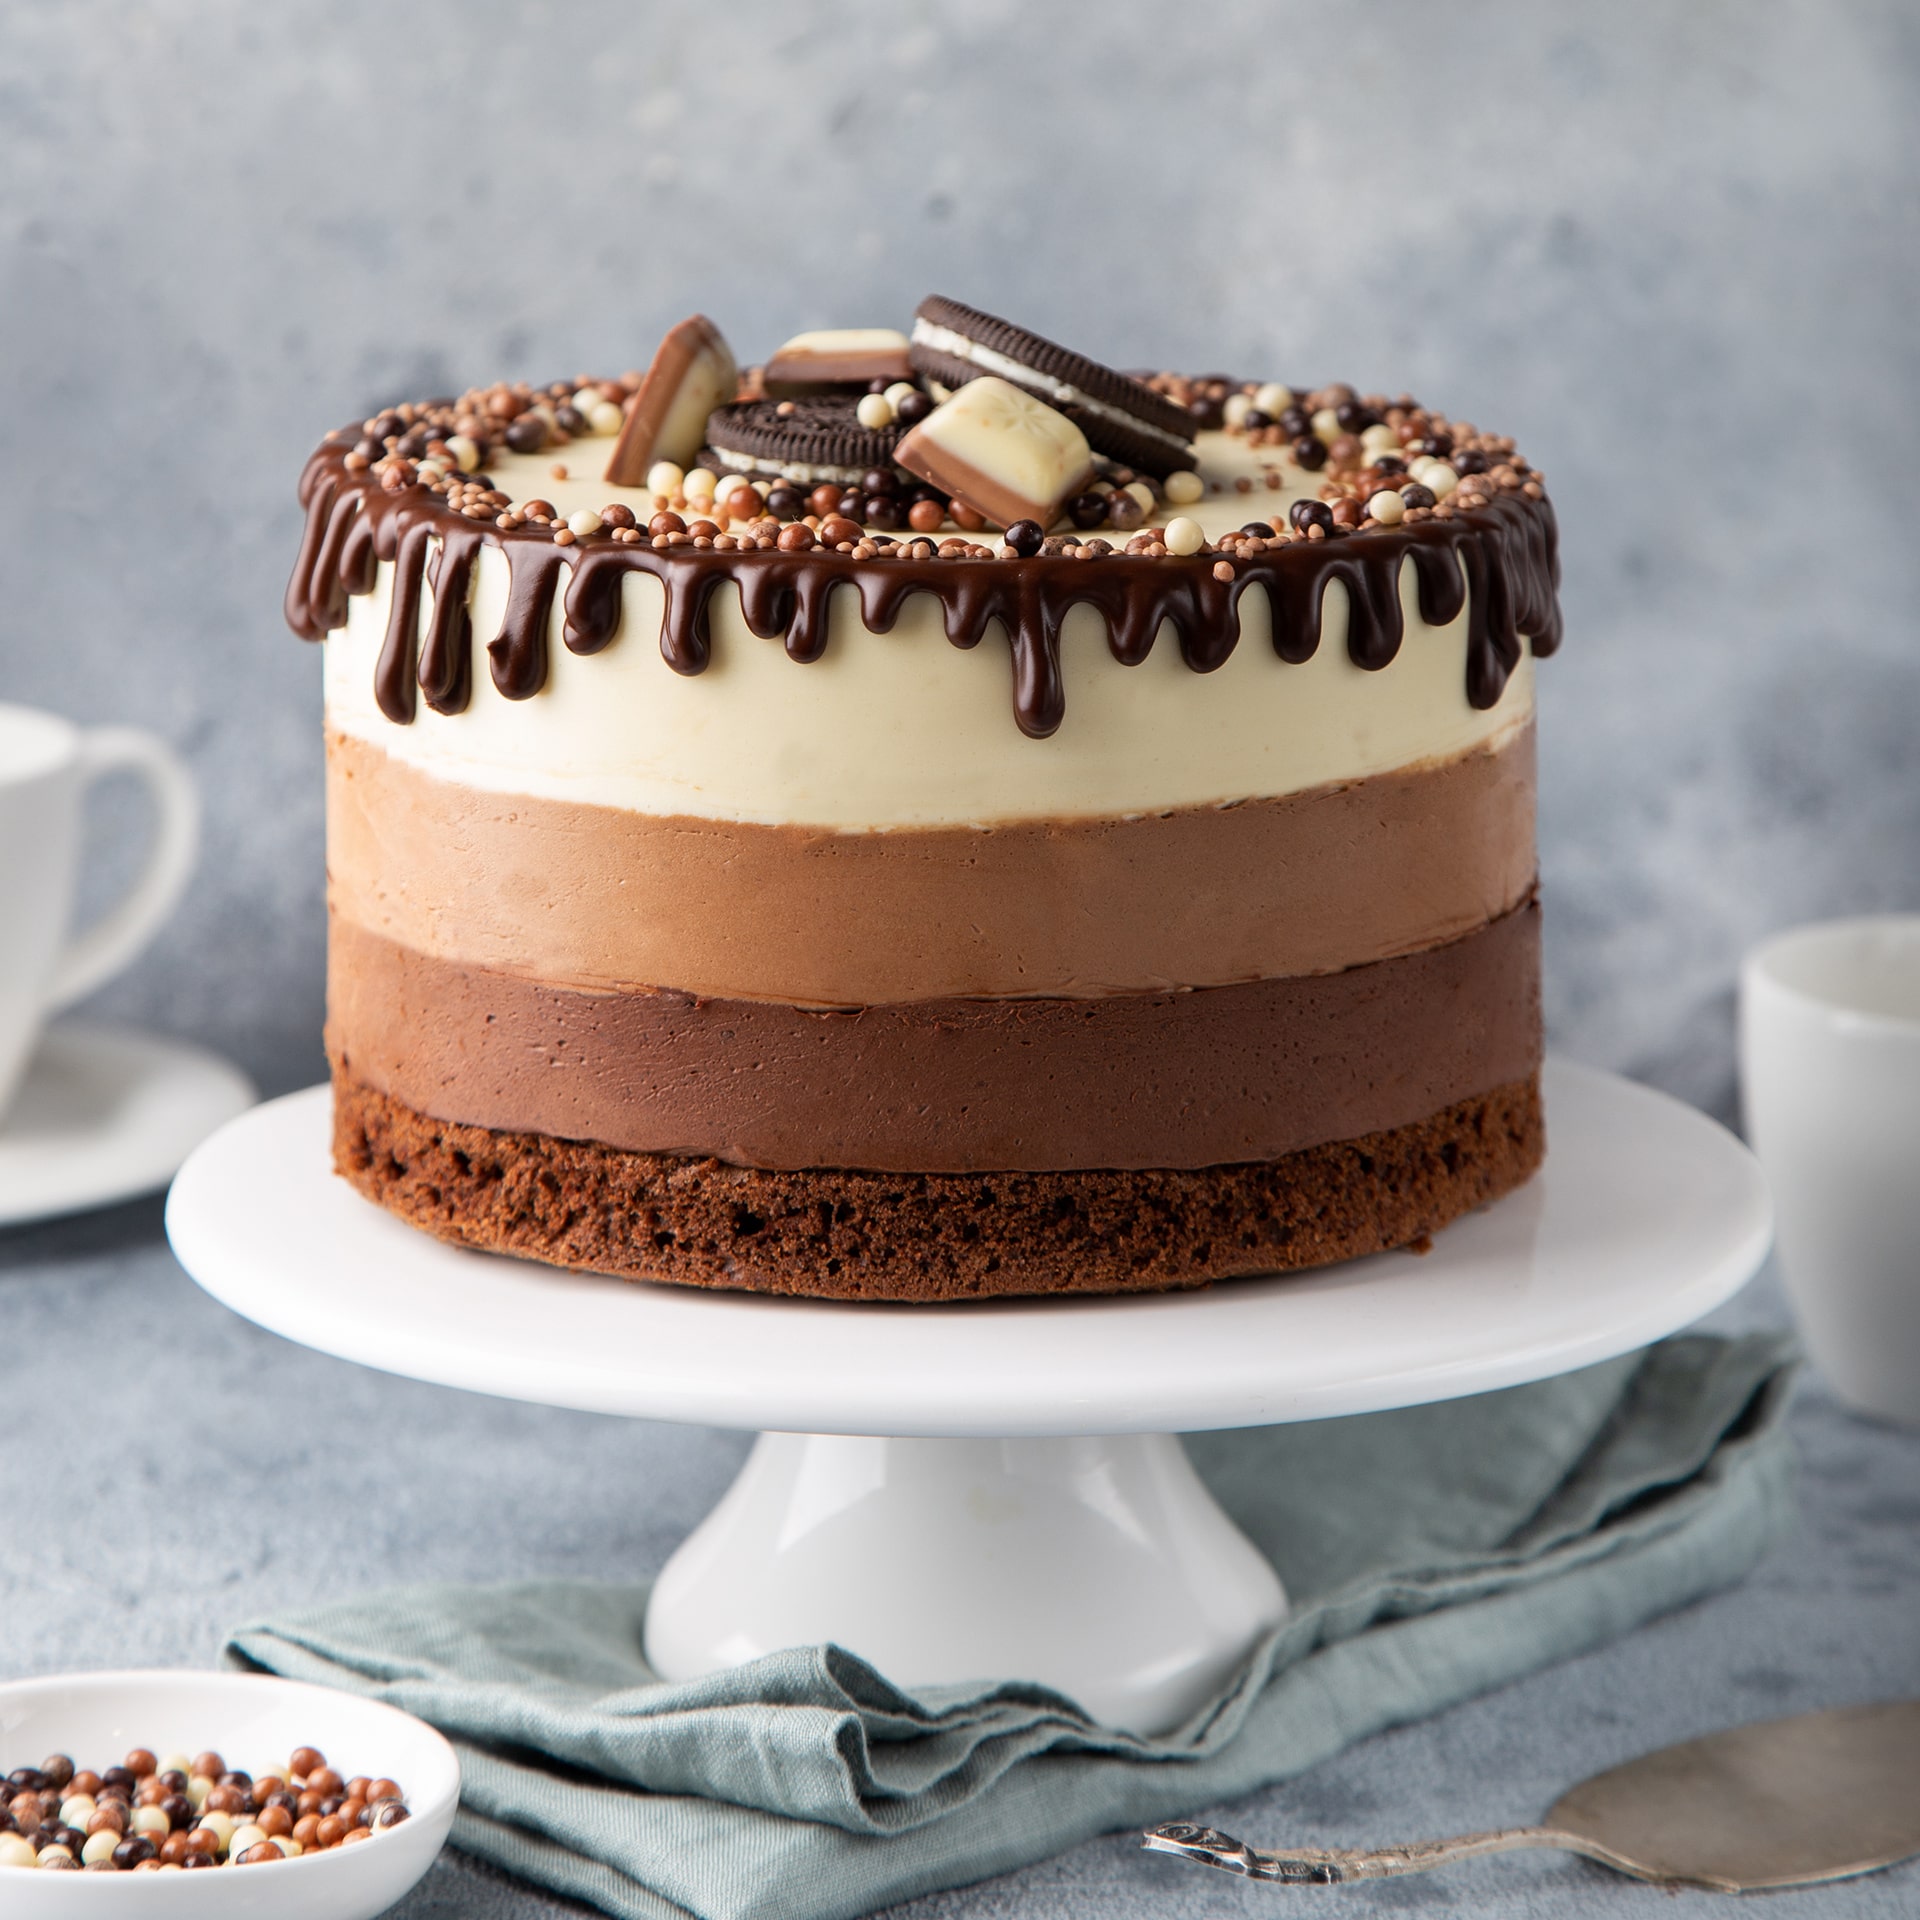 Choco-layered cake